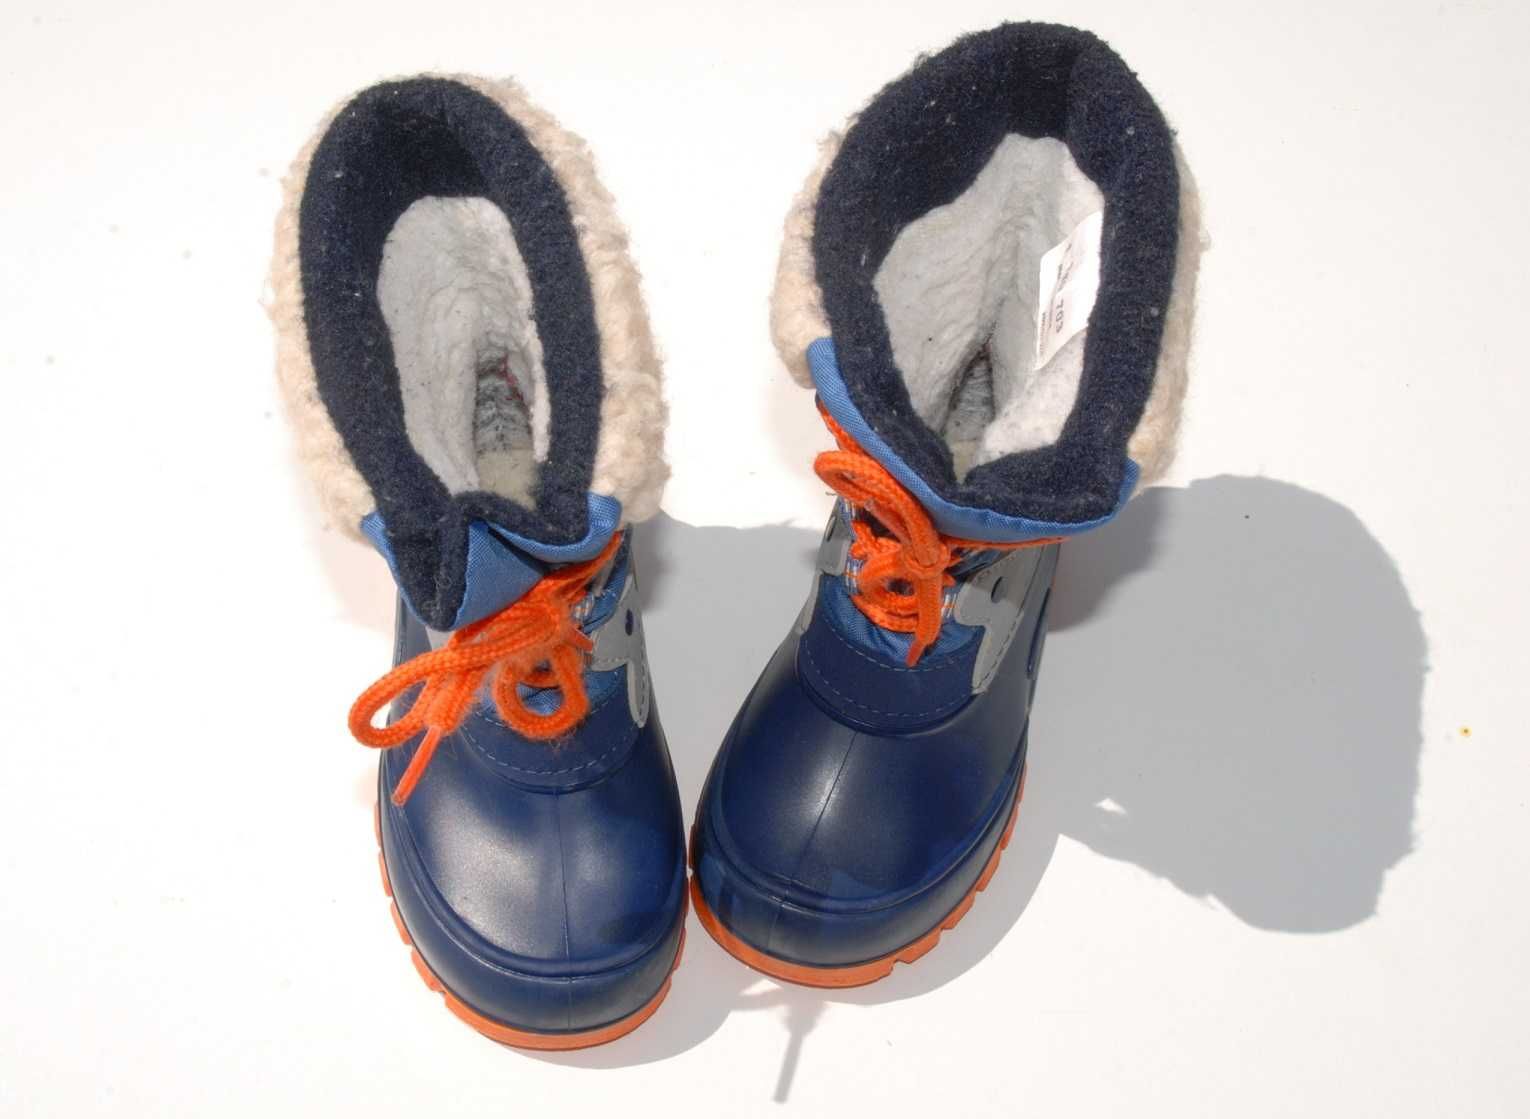 Buty Śniegowce Chłopięce Cortina rozmiar 27 wkł 16